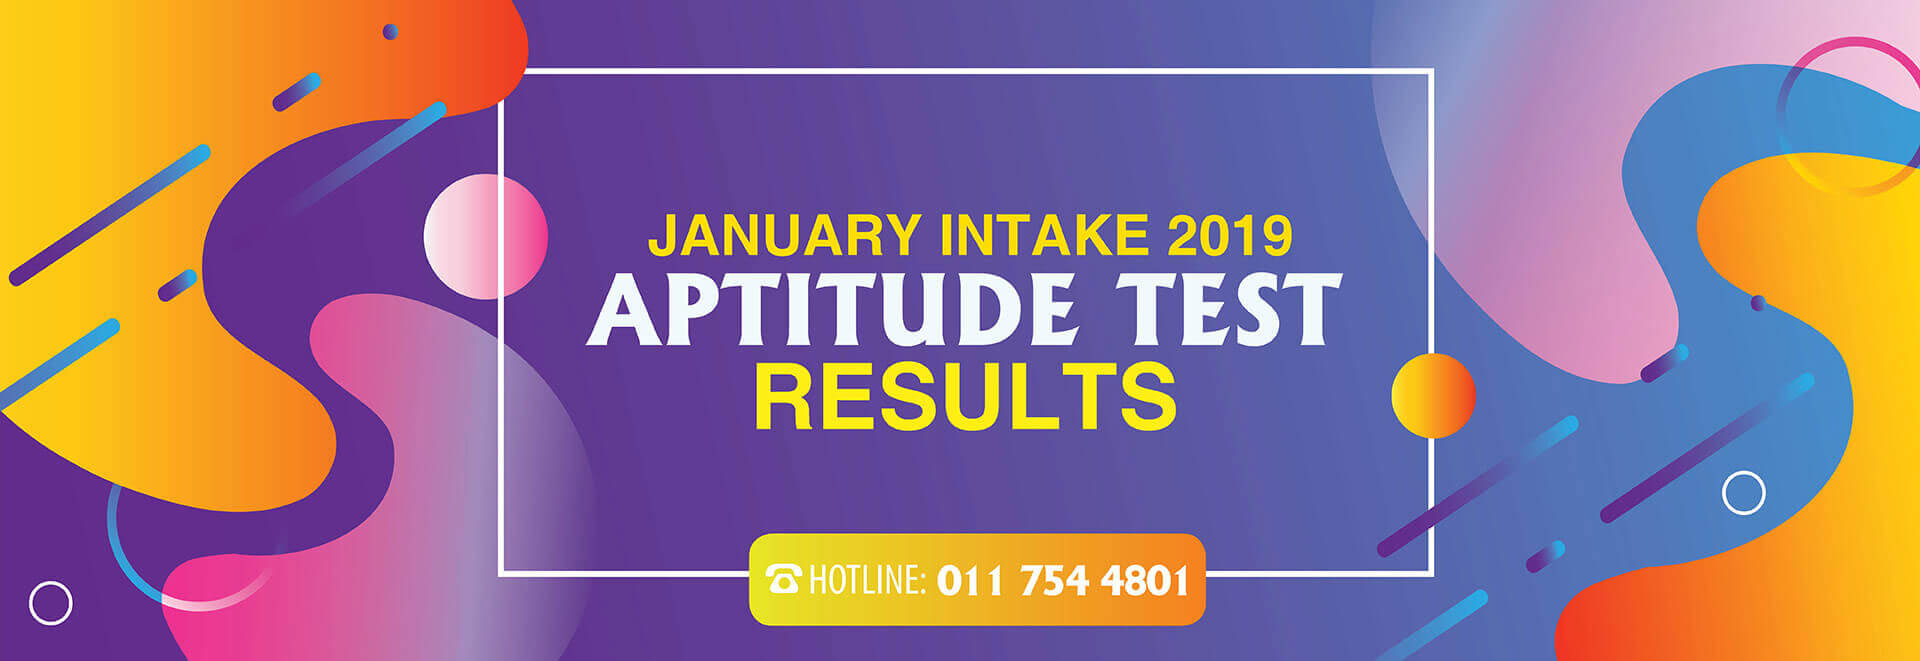 management-aptitude-test-december-result-2023-2024-mba